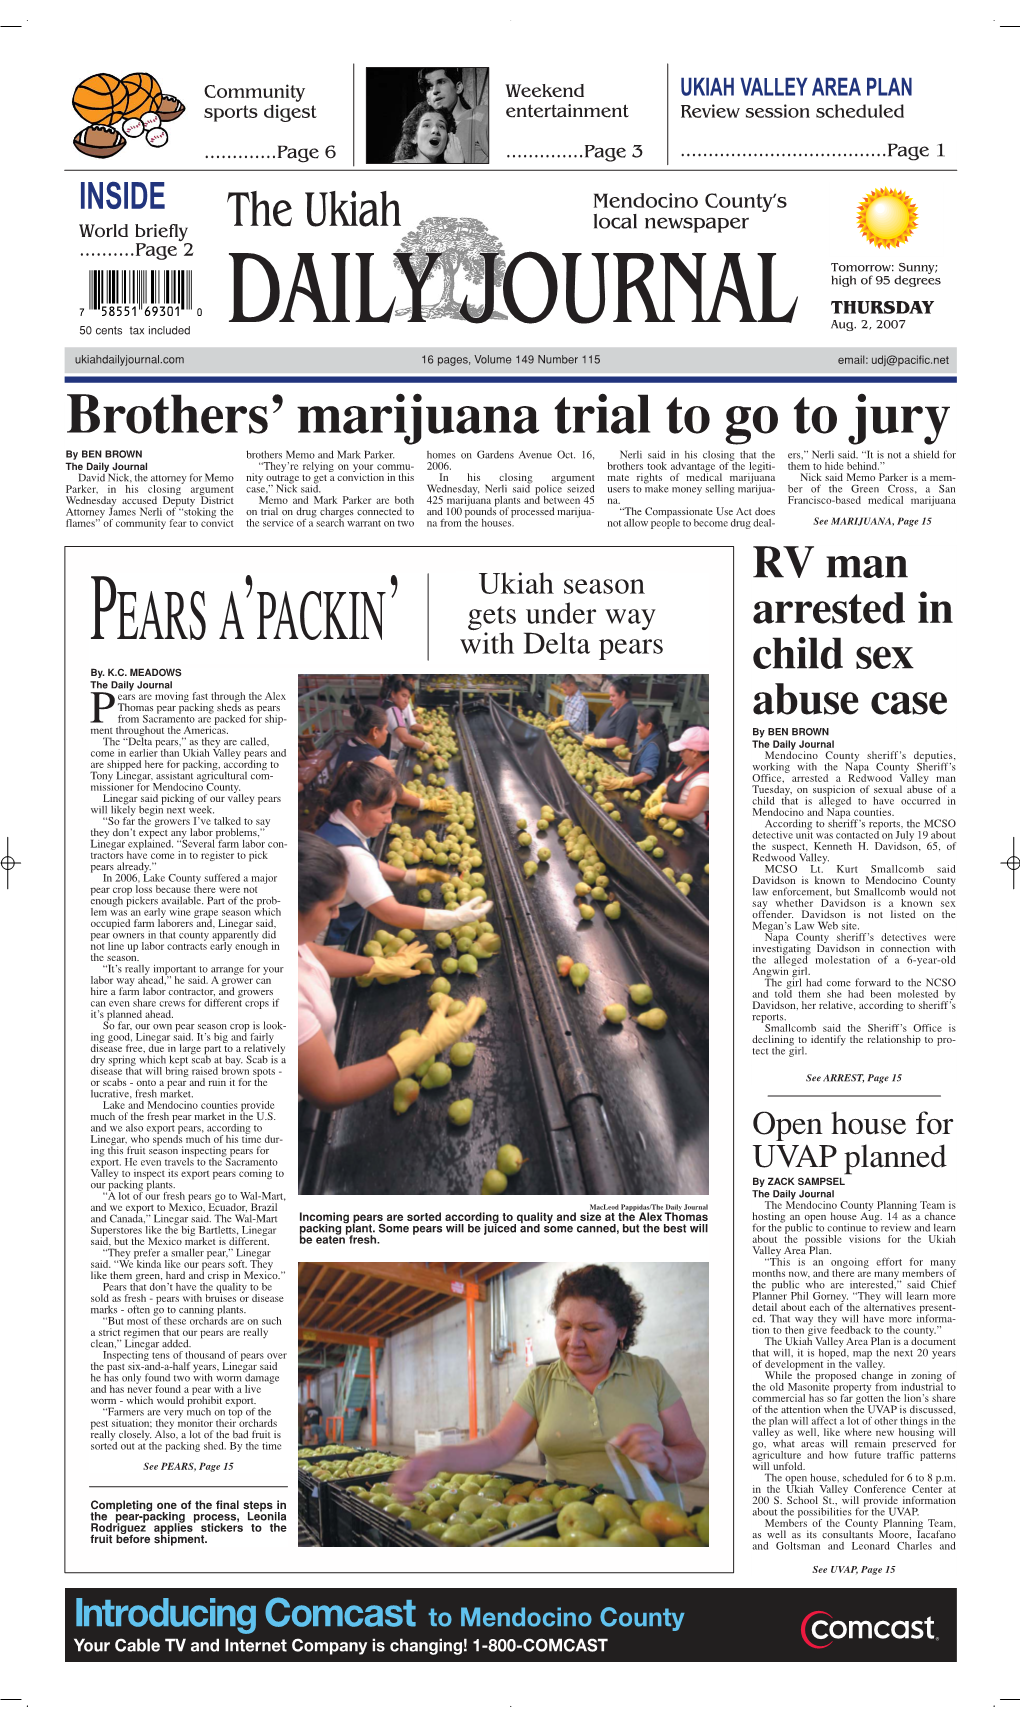 Brothers' Marijuana Trial to Go to Jury